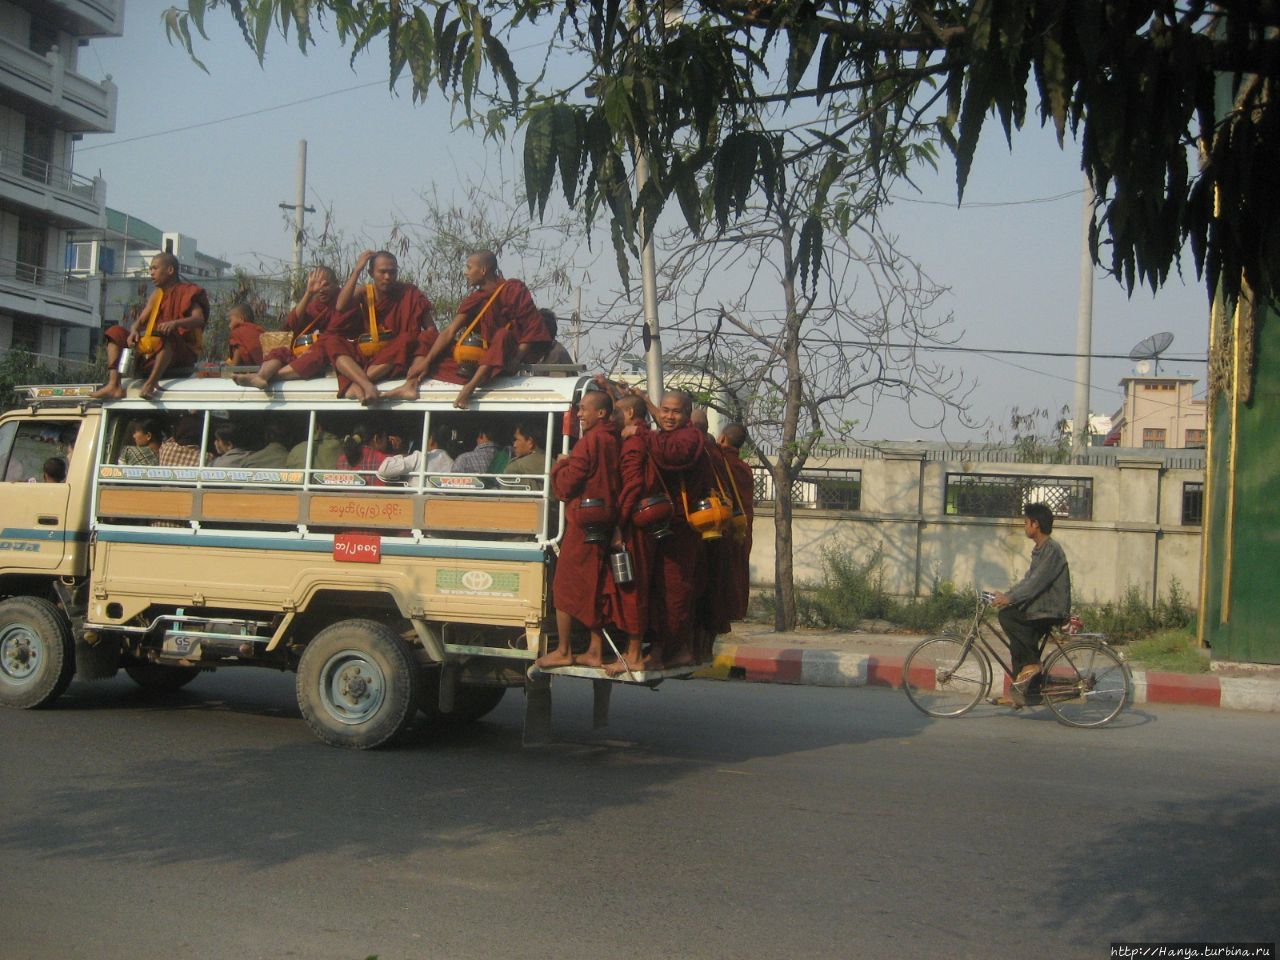 «Трамвай обвешенный, летит как бешеный…». Часть 22 Мандалай, Мьянма